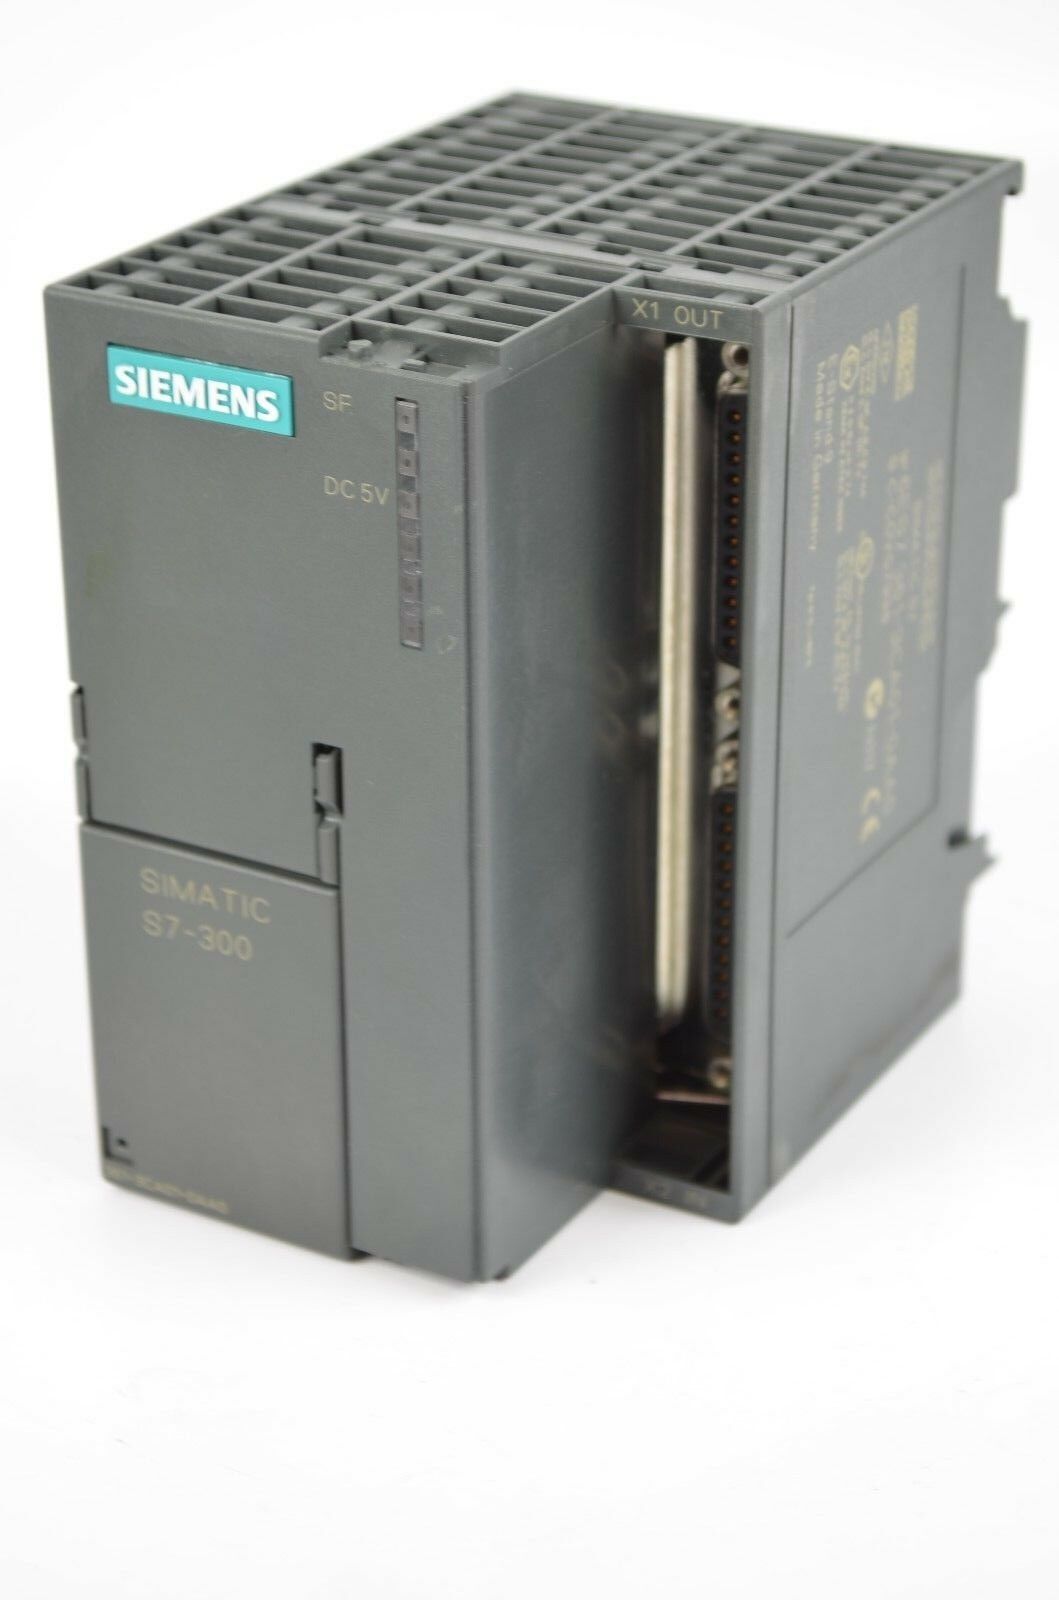 Siemens simatic S7-300 6ES7 361-3CA01-0AA0 ( 6ES7361-3CA01-0AA0 )